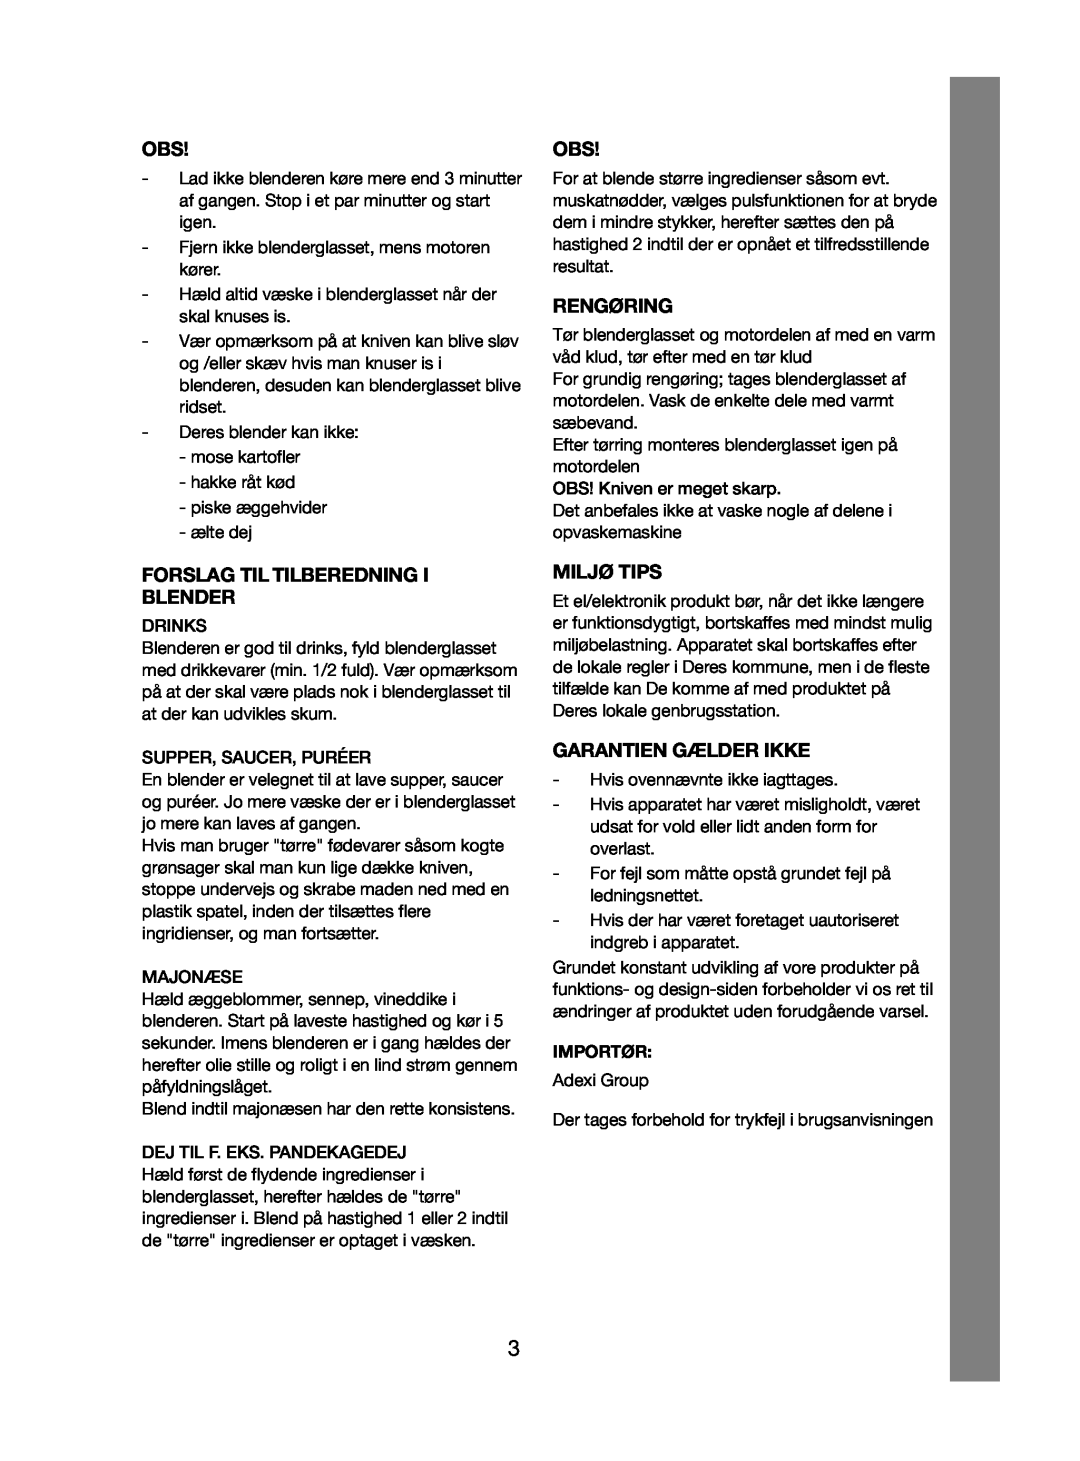 Melissa 246-015 manual Rengøring, Forslag Til Tilberedning I Blender, Miljø Tips, Garantien Gælder Ikke, Importør 